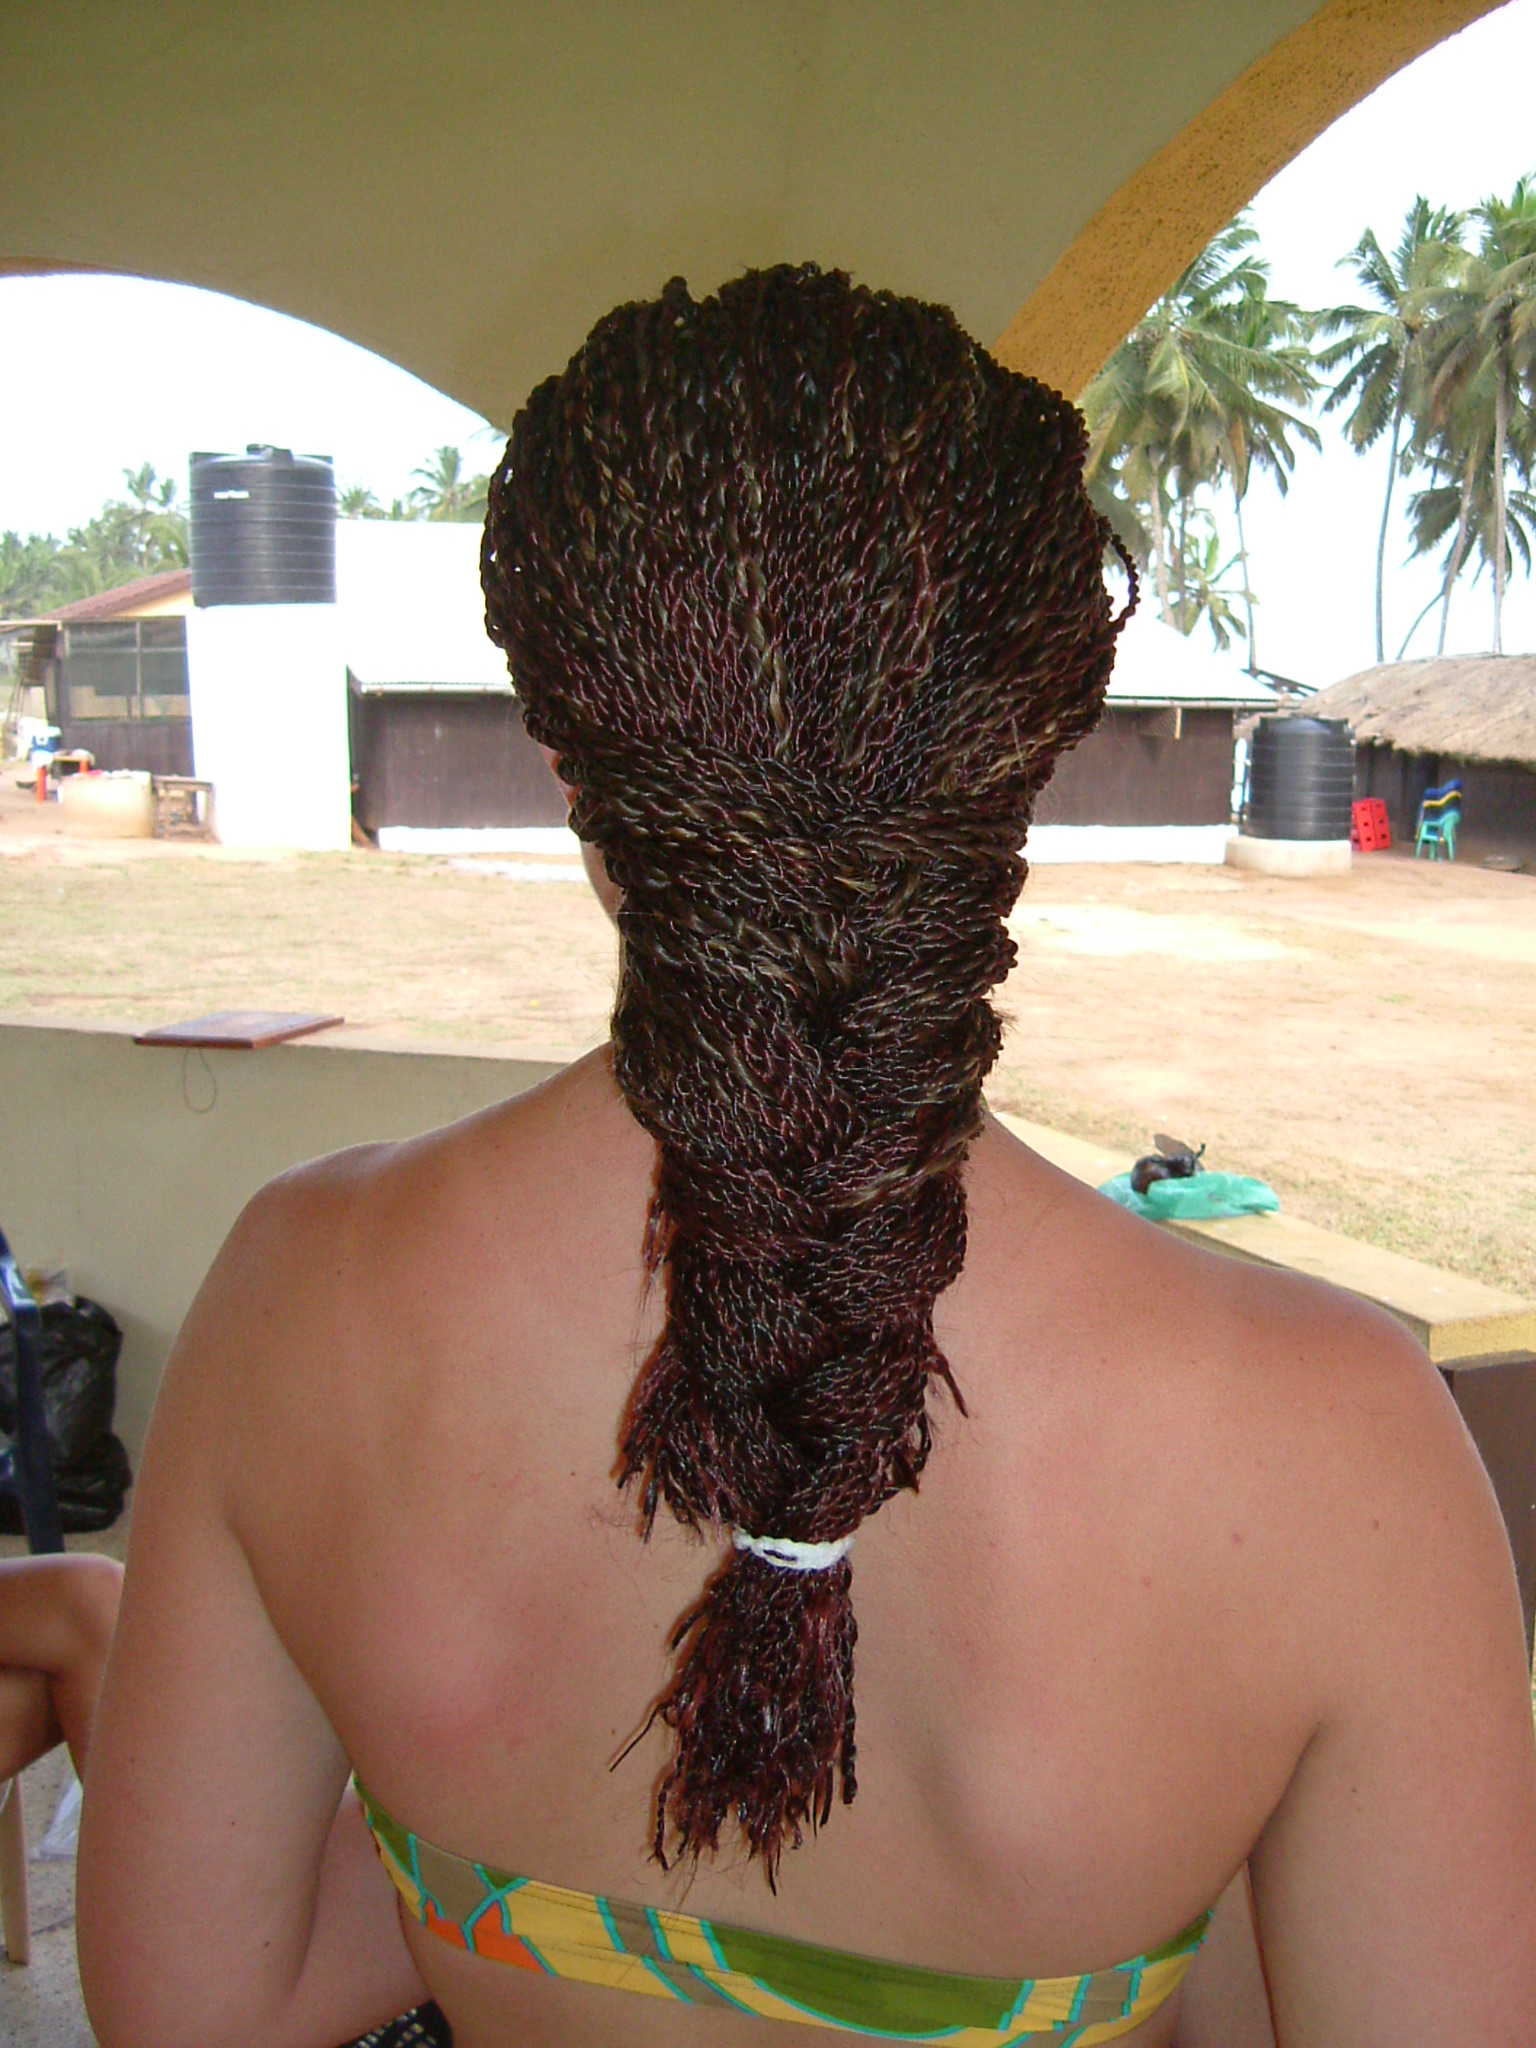 jirka fur hair braids texture black back female woman